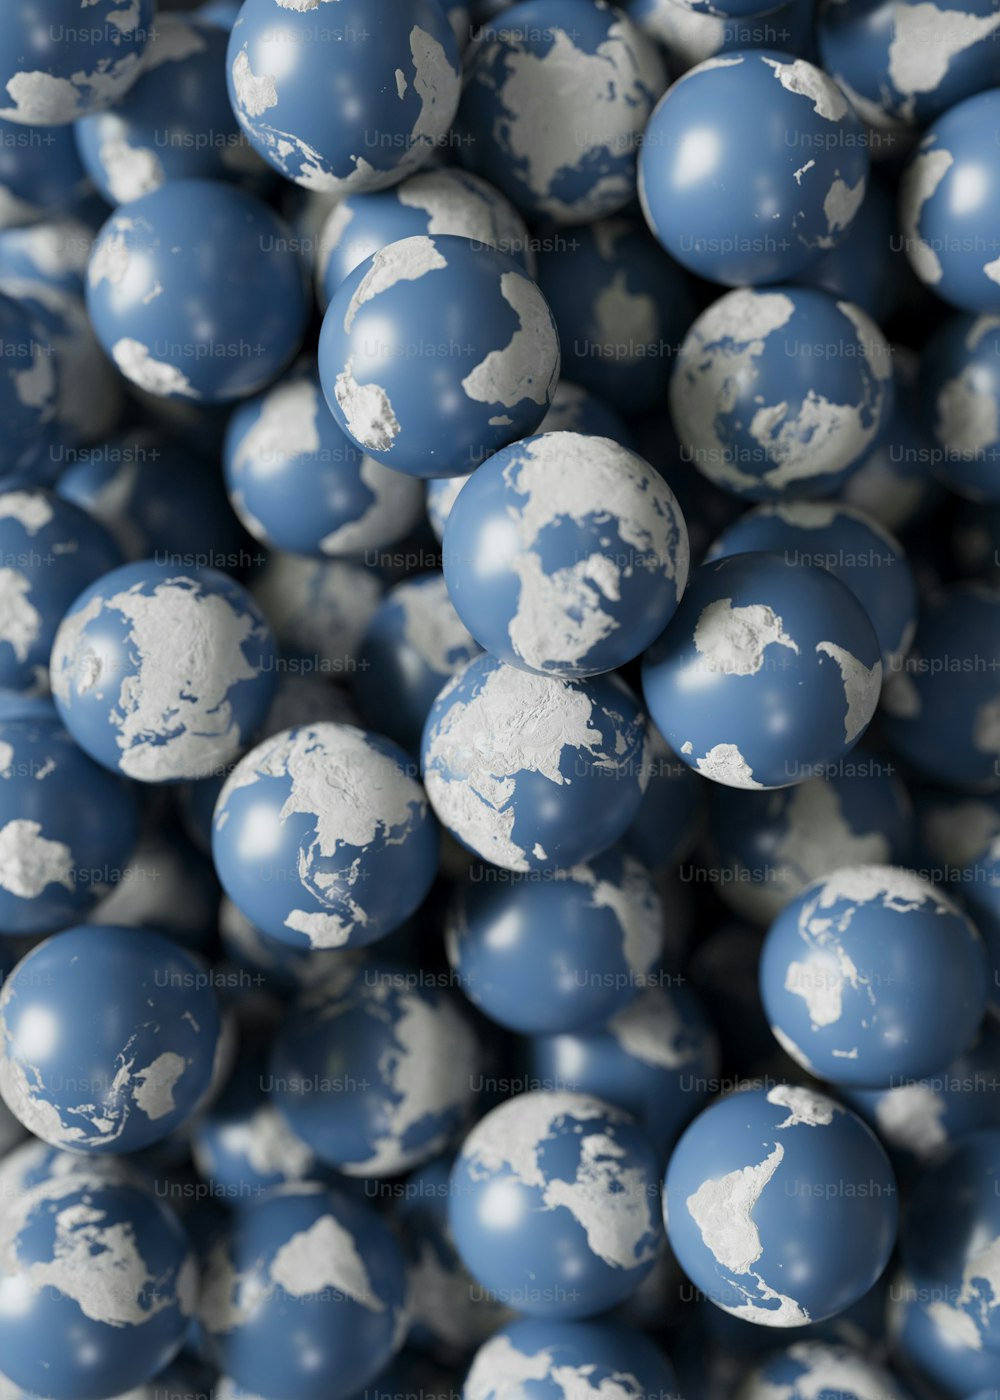 un mucchio di palline blu e bianche con una mappa del mondo su di esse